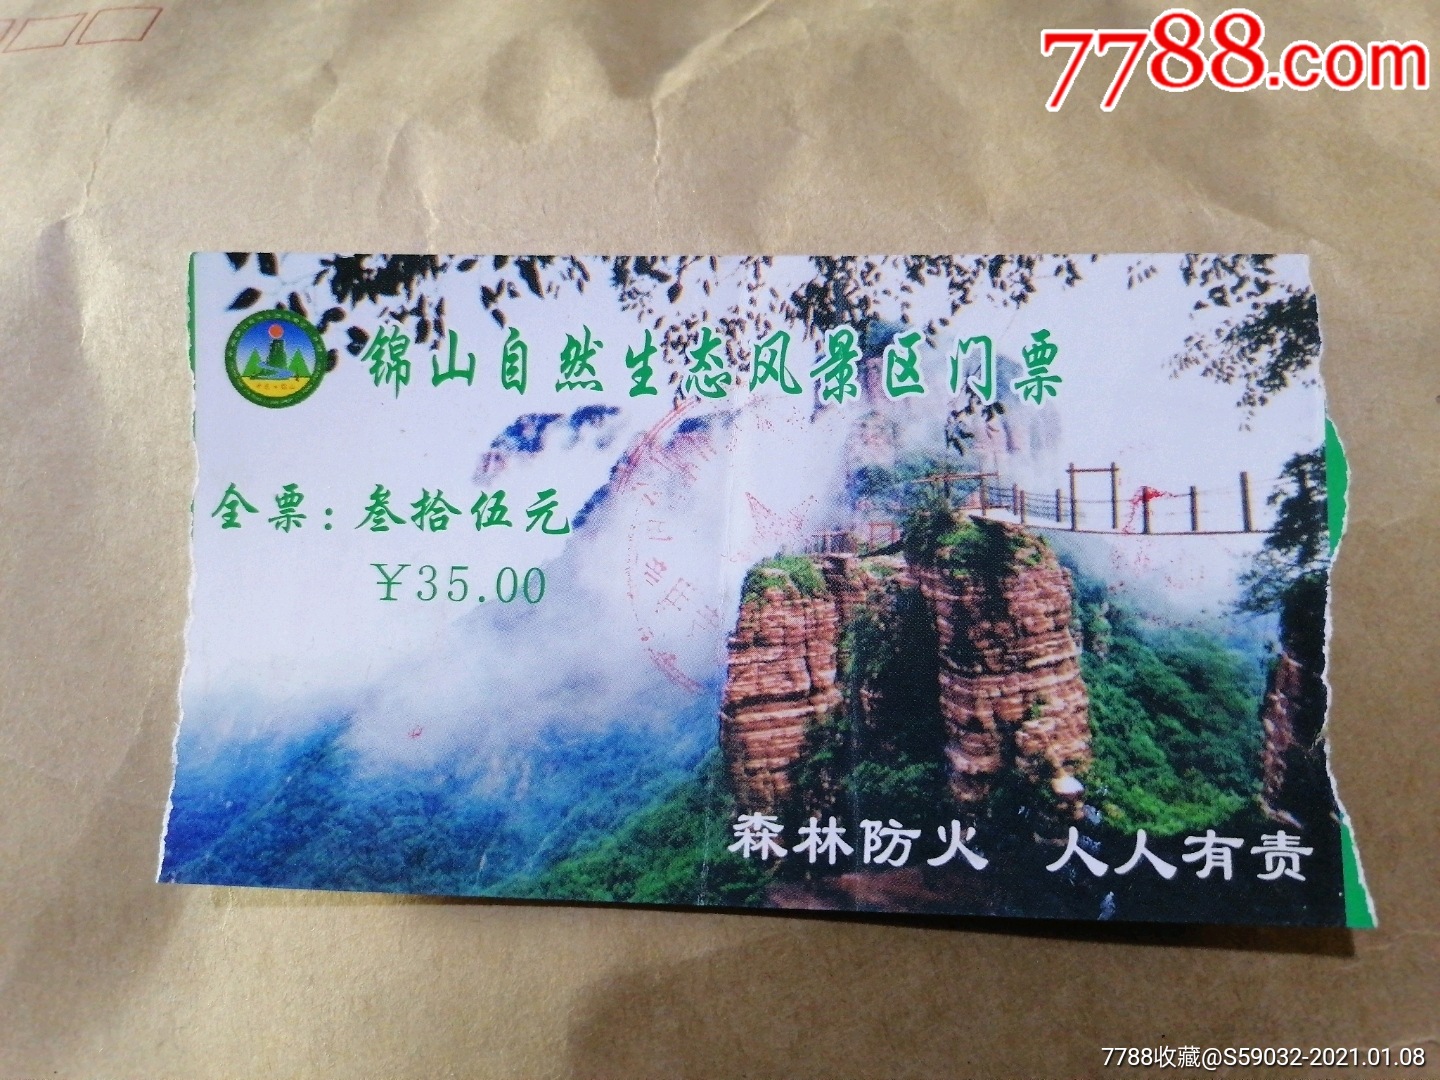 锦山自然生态风景区门票